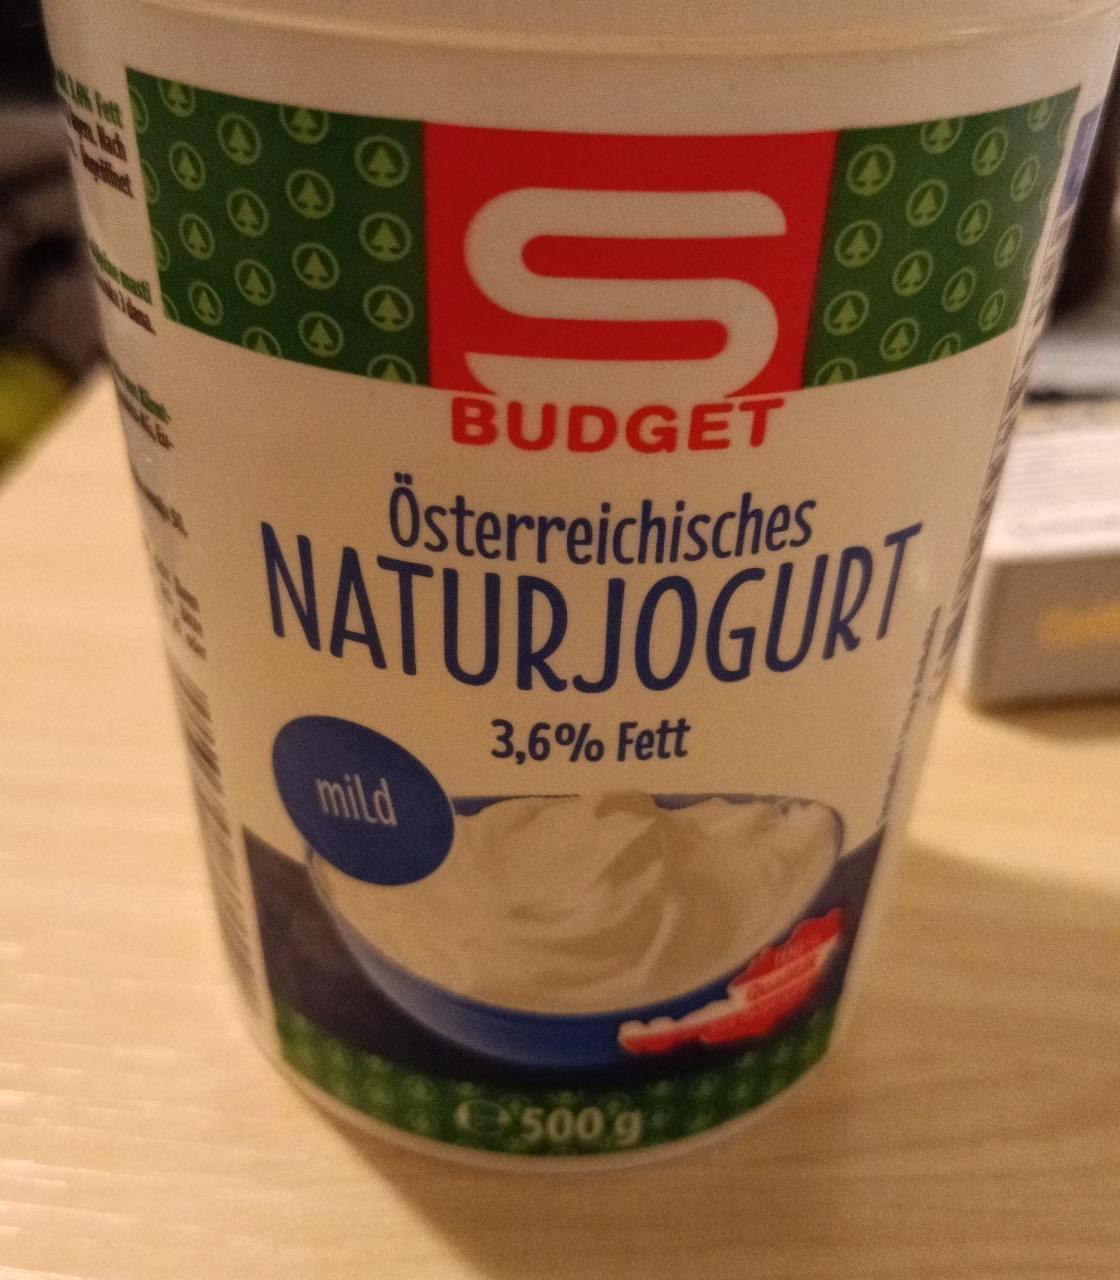 Képek - Natúr joghurt 3,6% Österreichisches S Budget